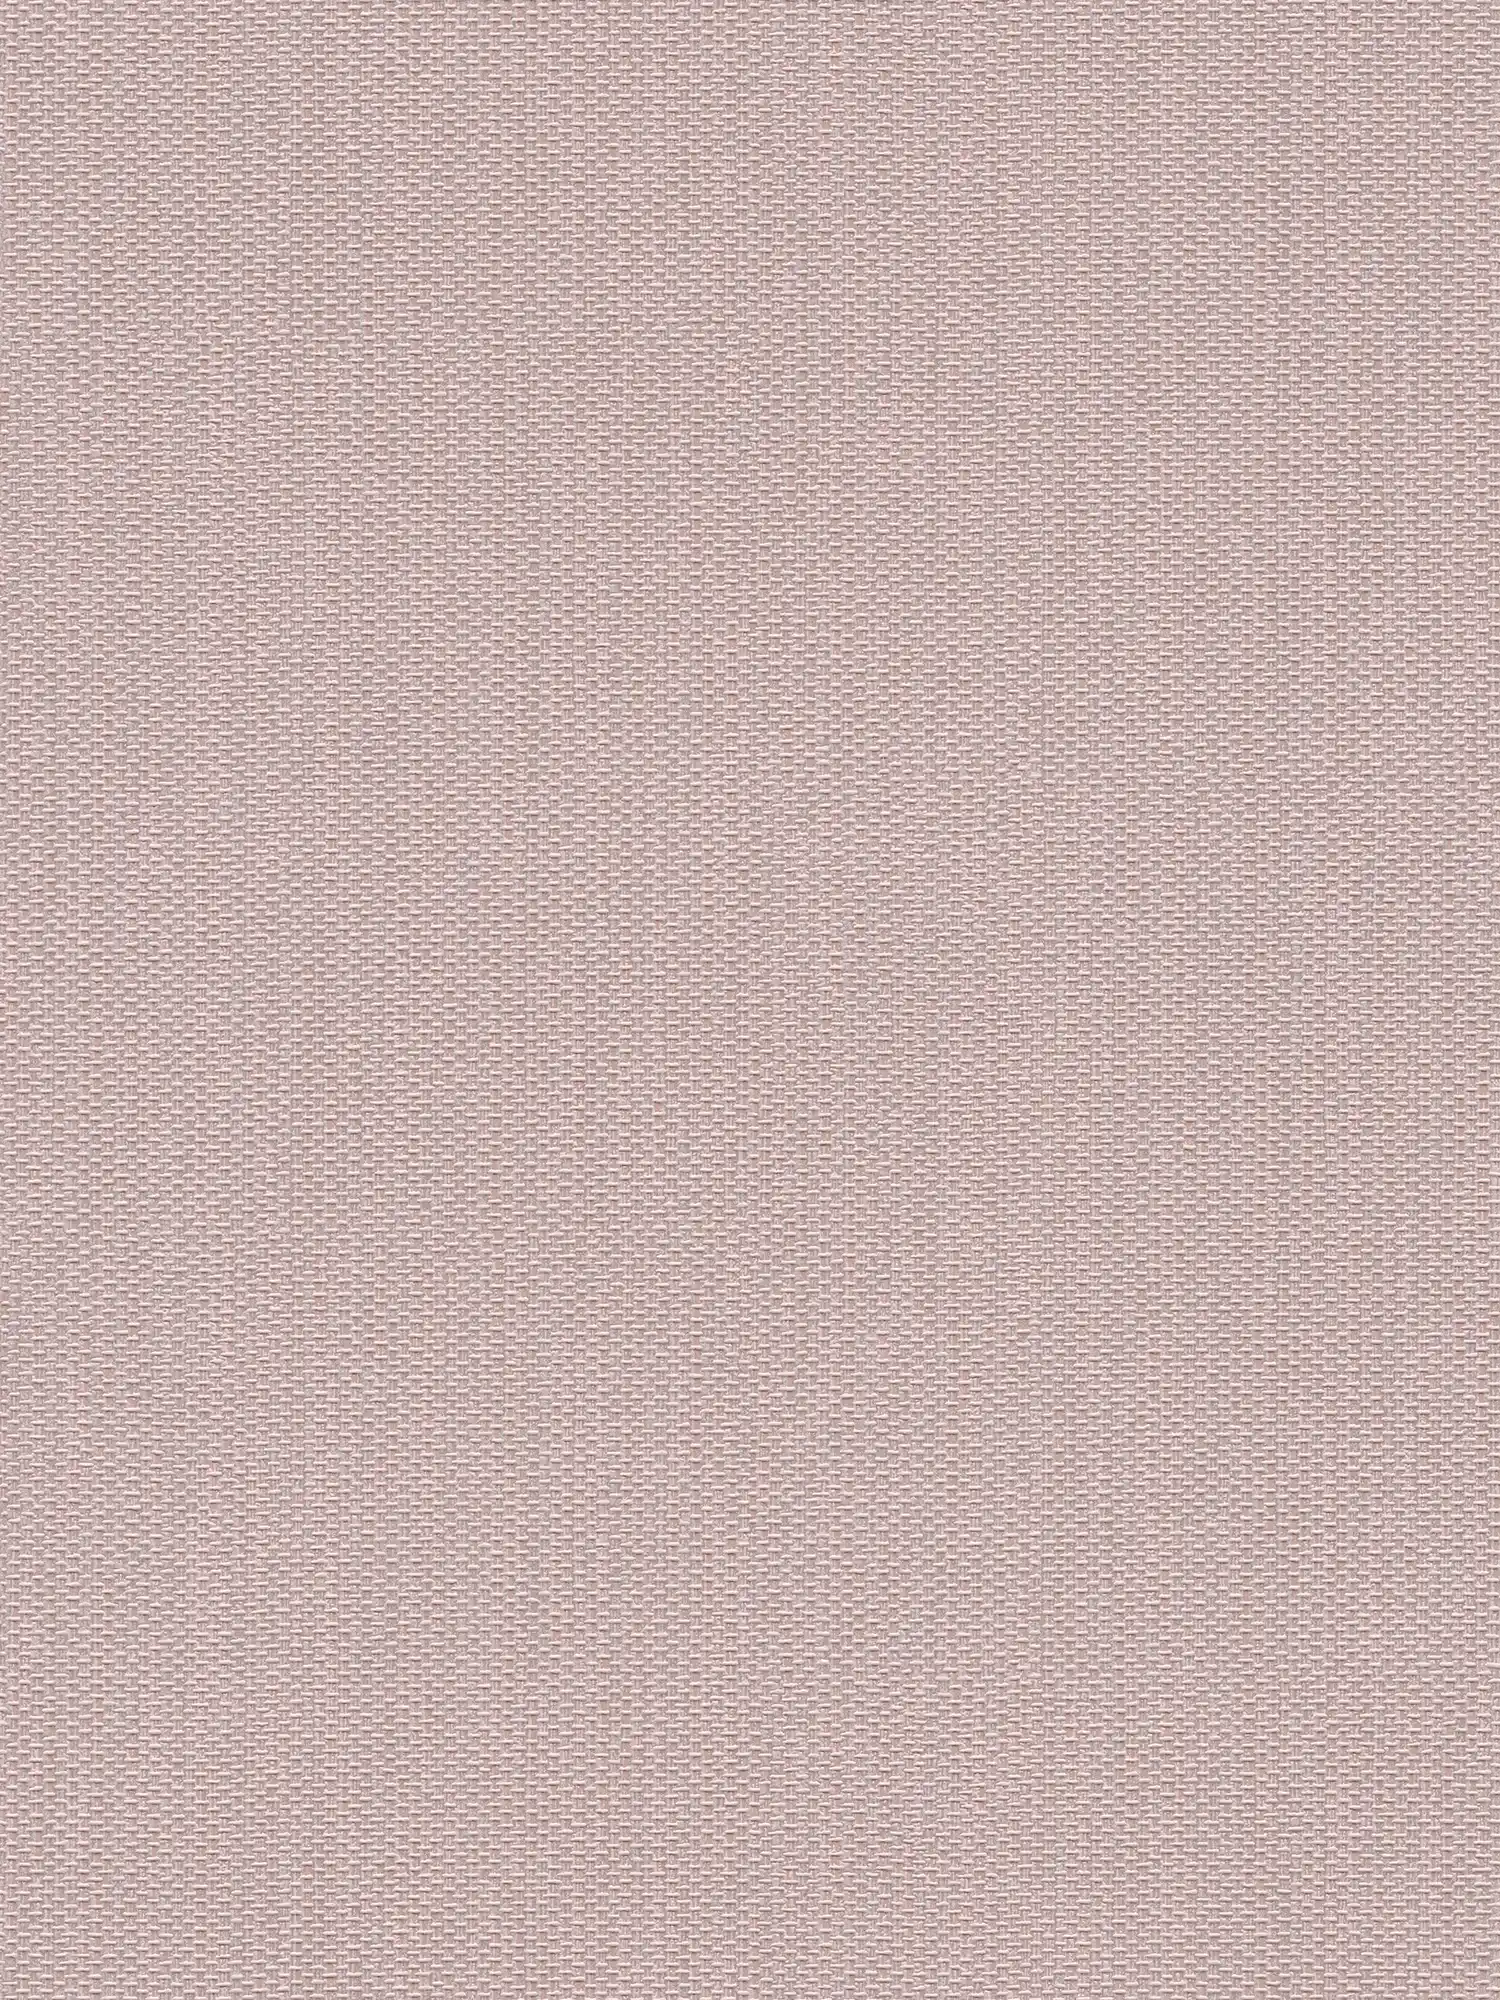 Carta da parati non tessuta con aspetto tessile - rosa, argento
